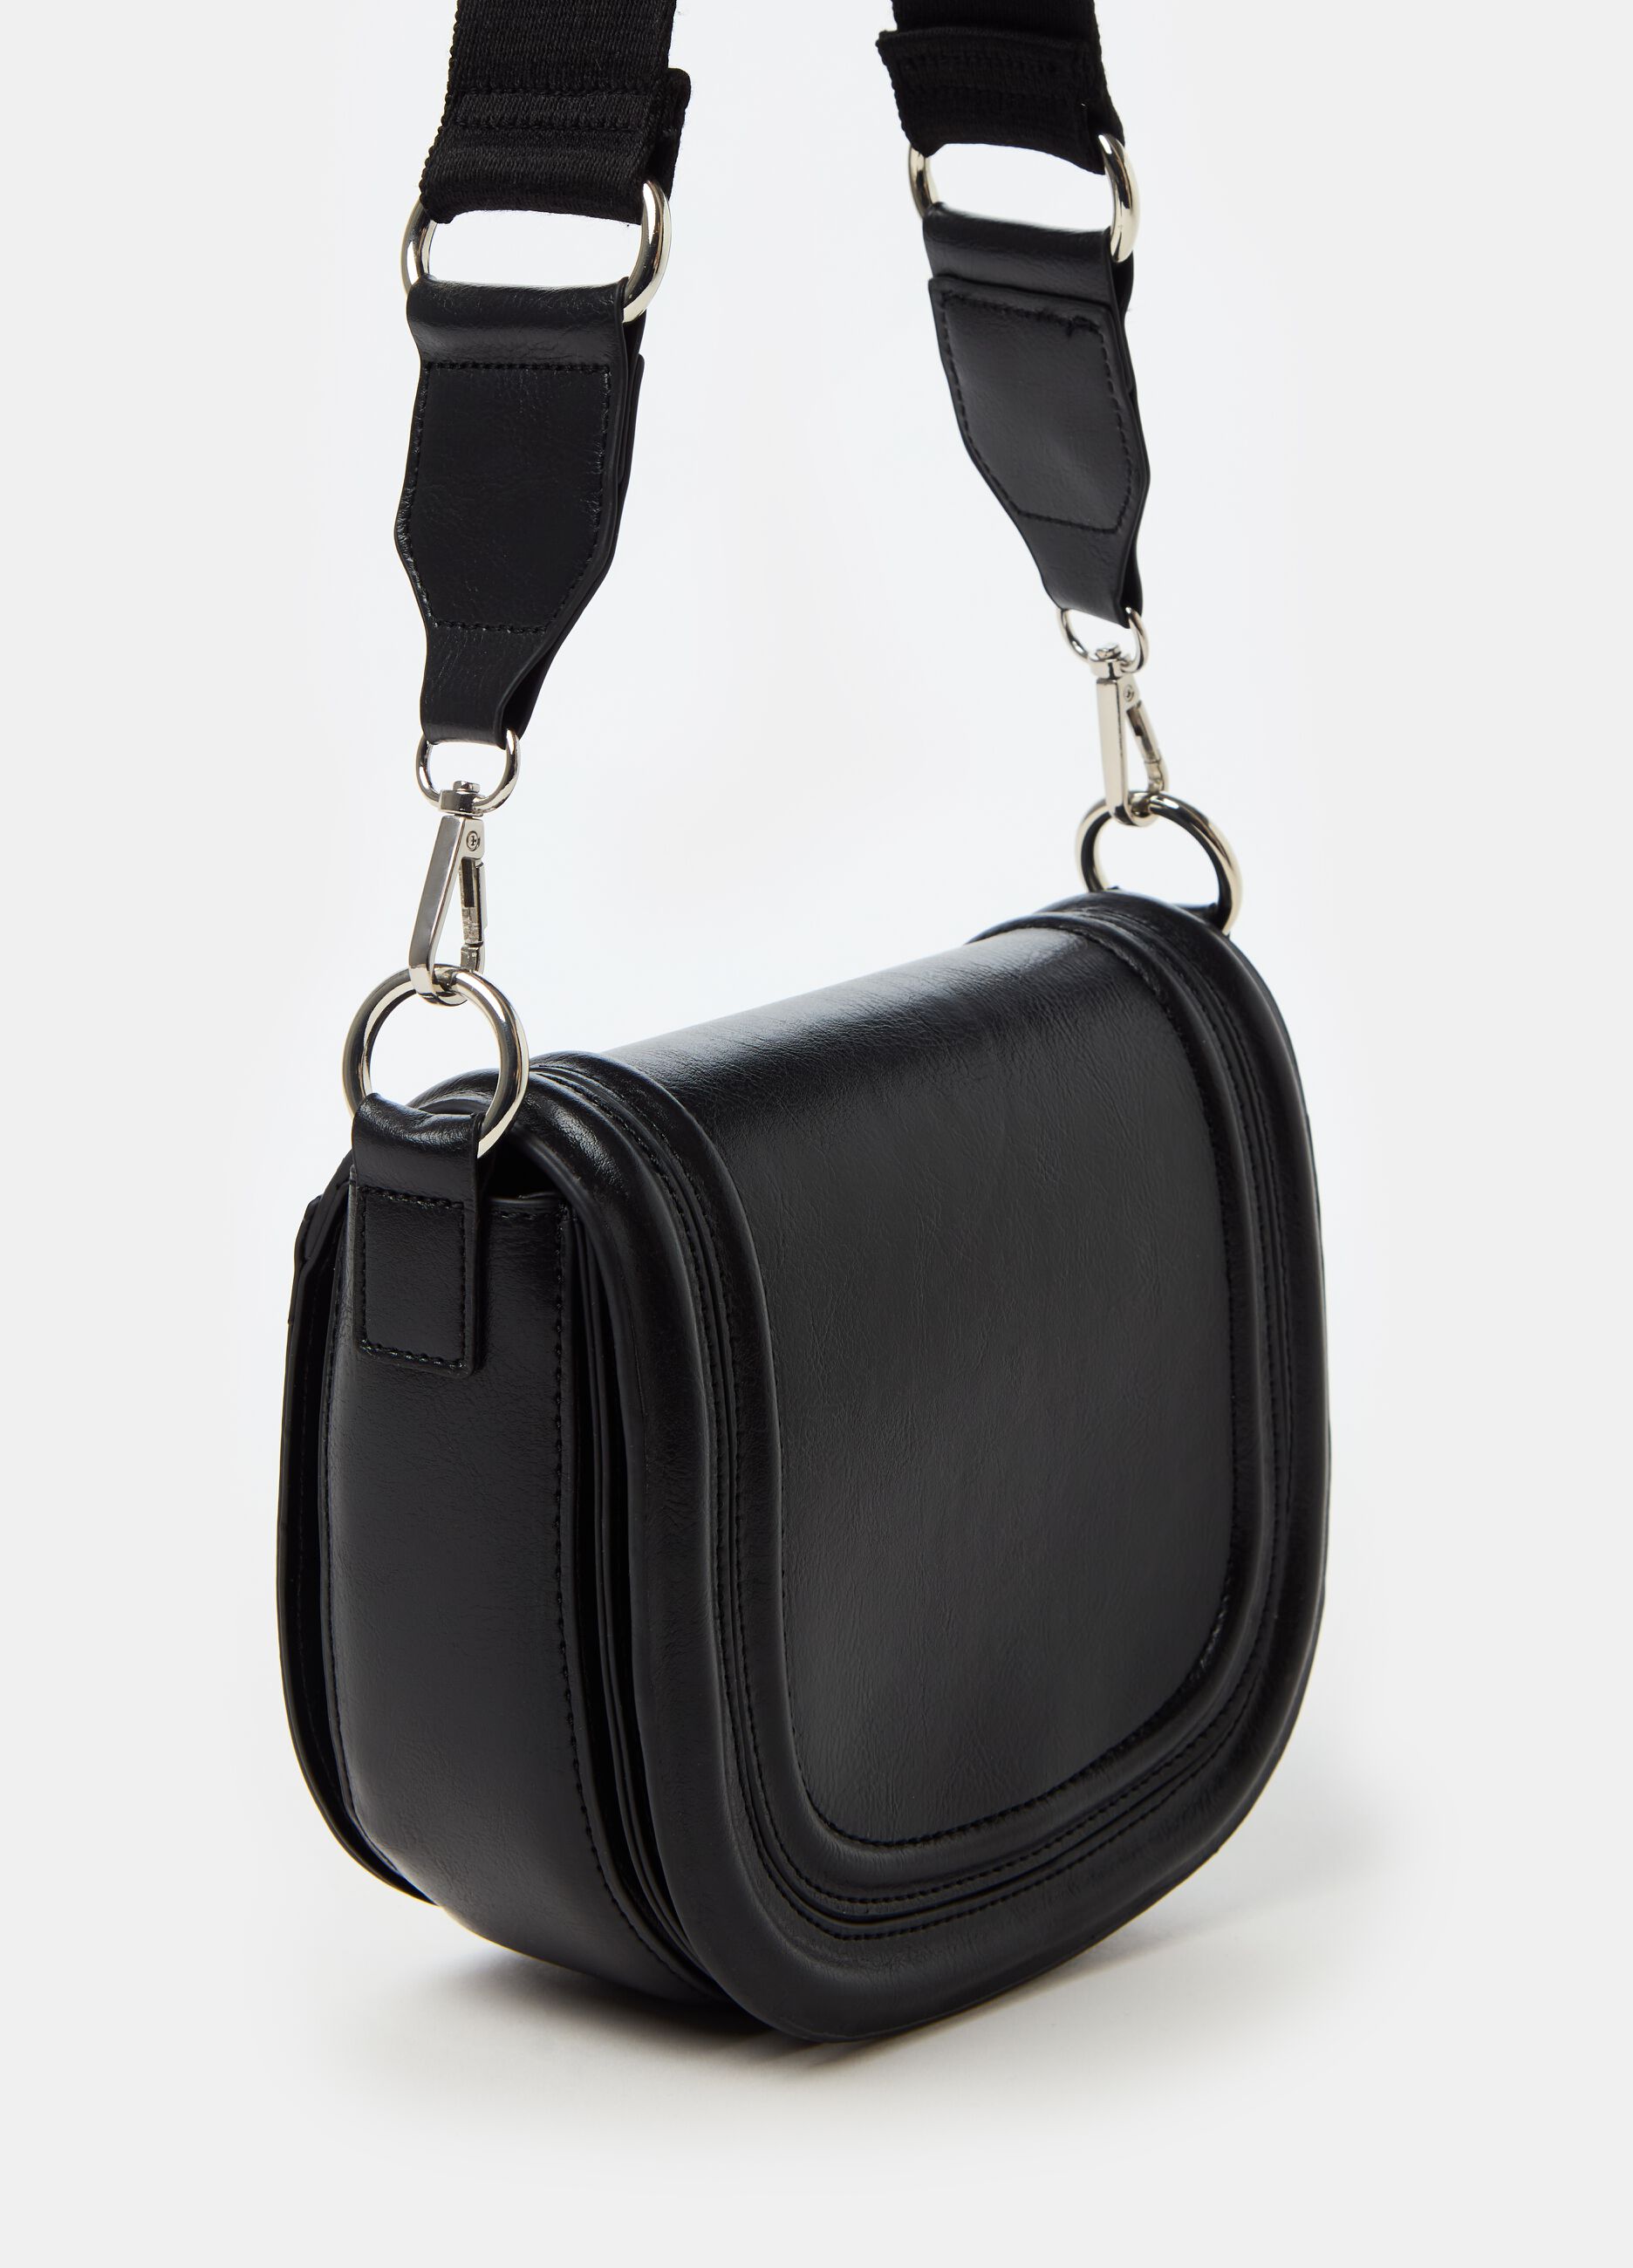 Flap bag with shoulder strap